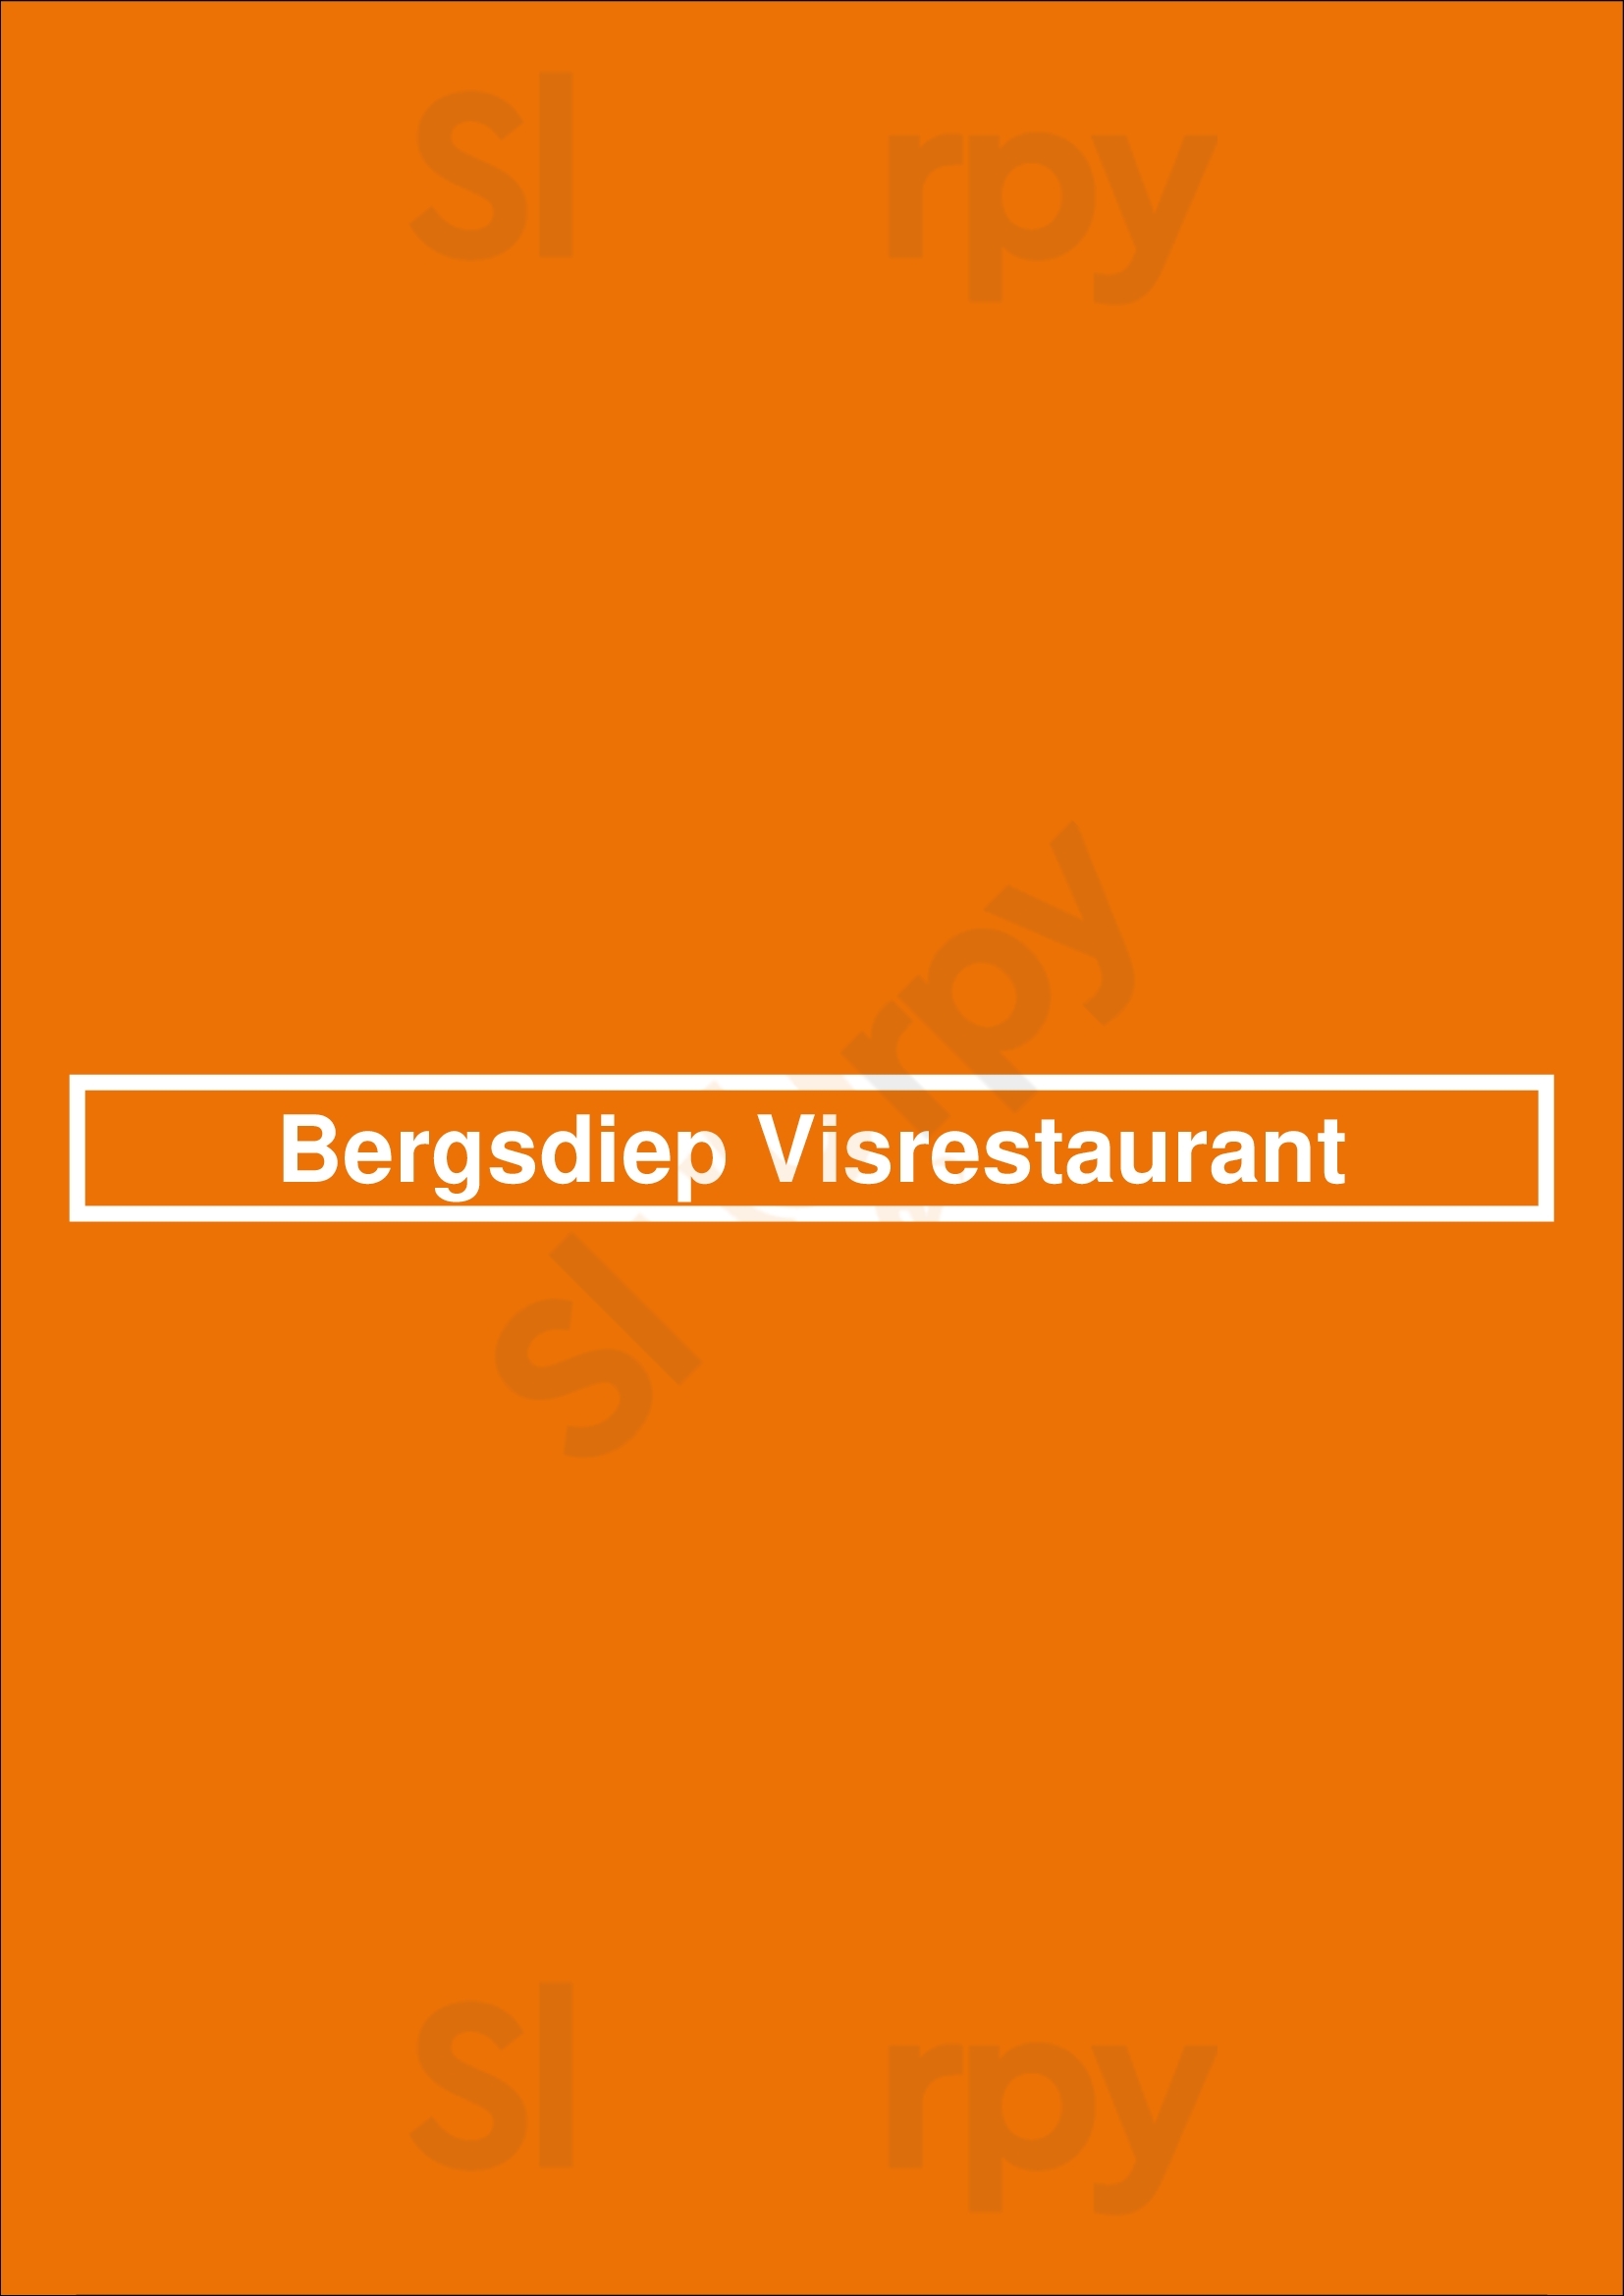 Bergsdiep Visrestaurant Bergen op Zoom Menu - 1